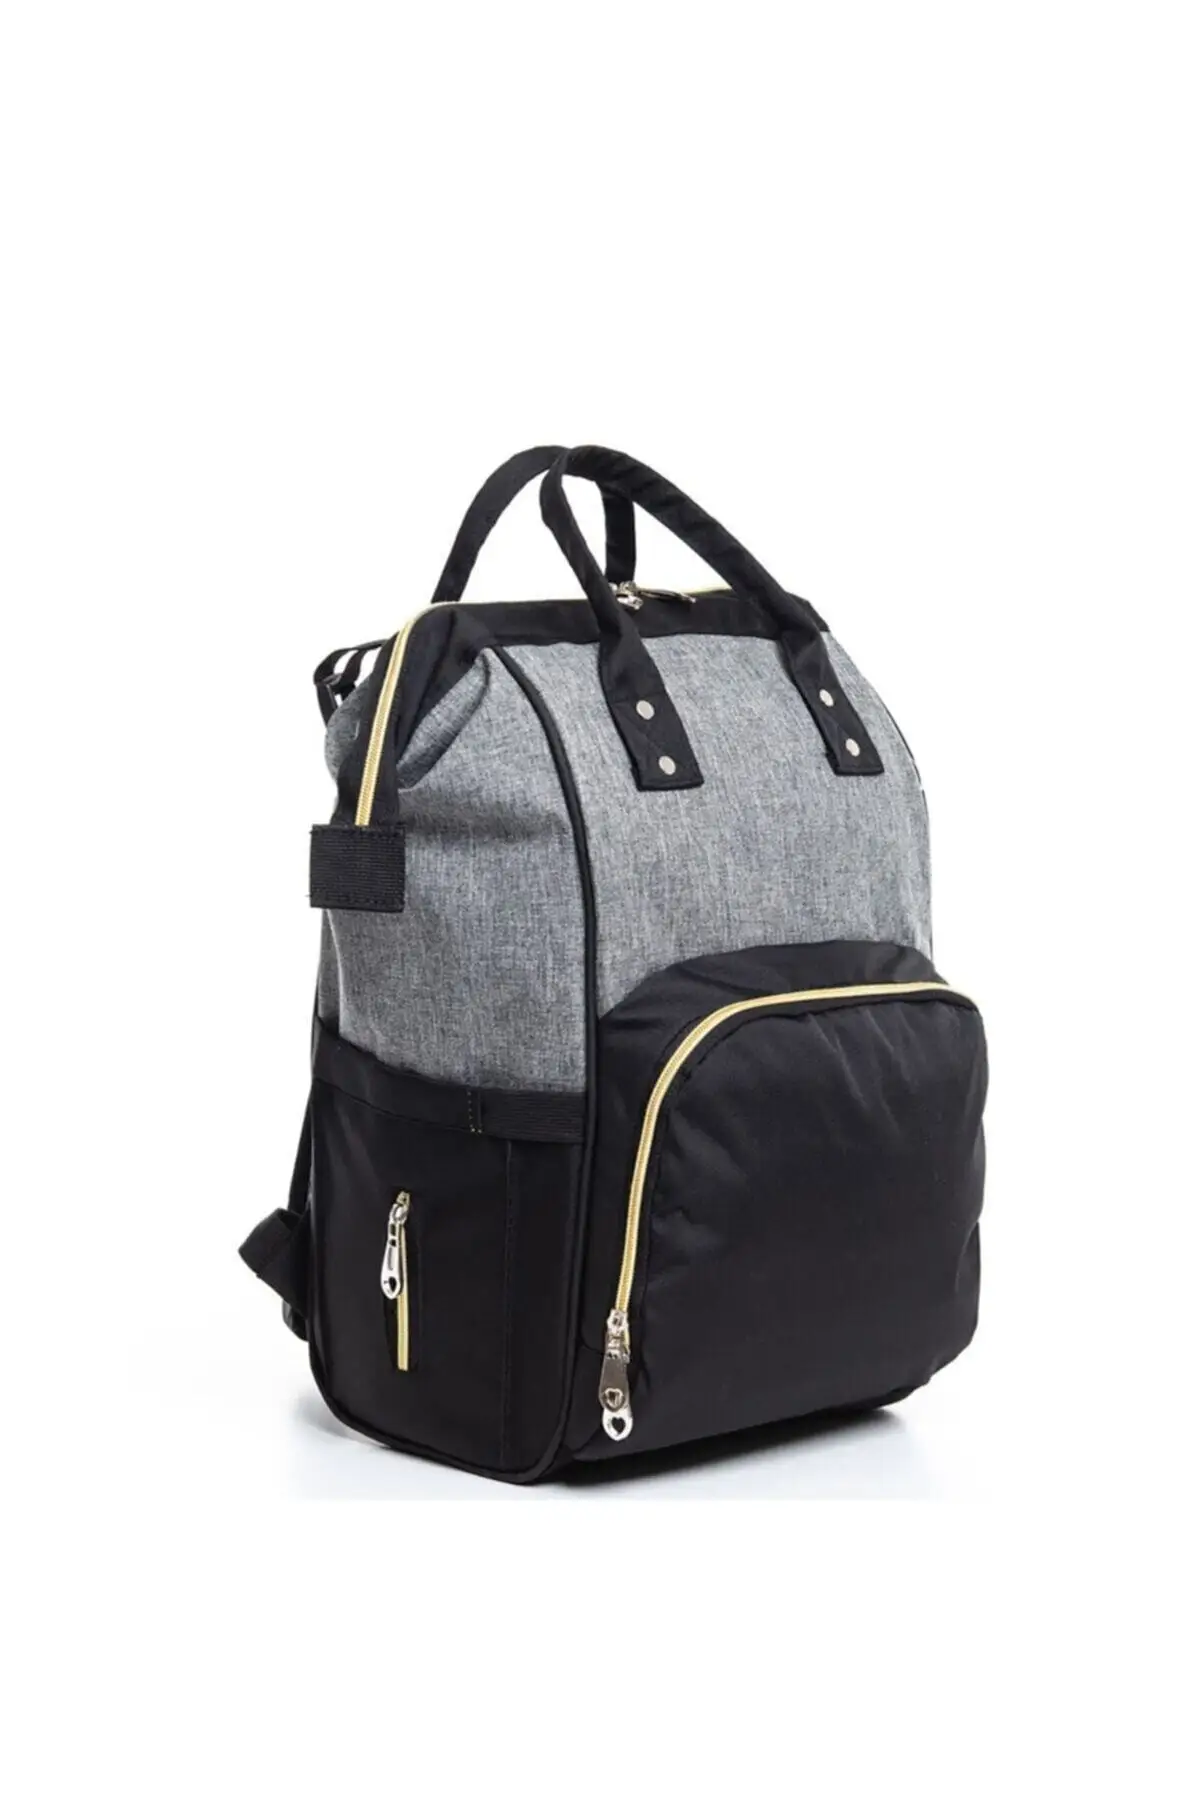 Детская сумка, детский рюкзак для мамы, черный, серый, золотой